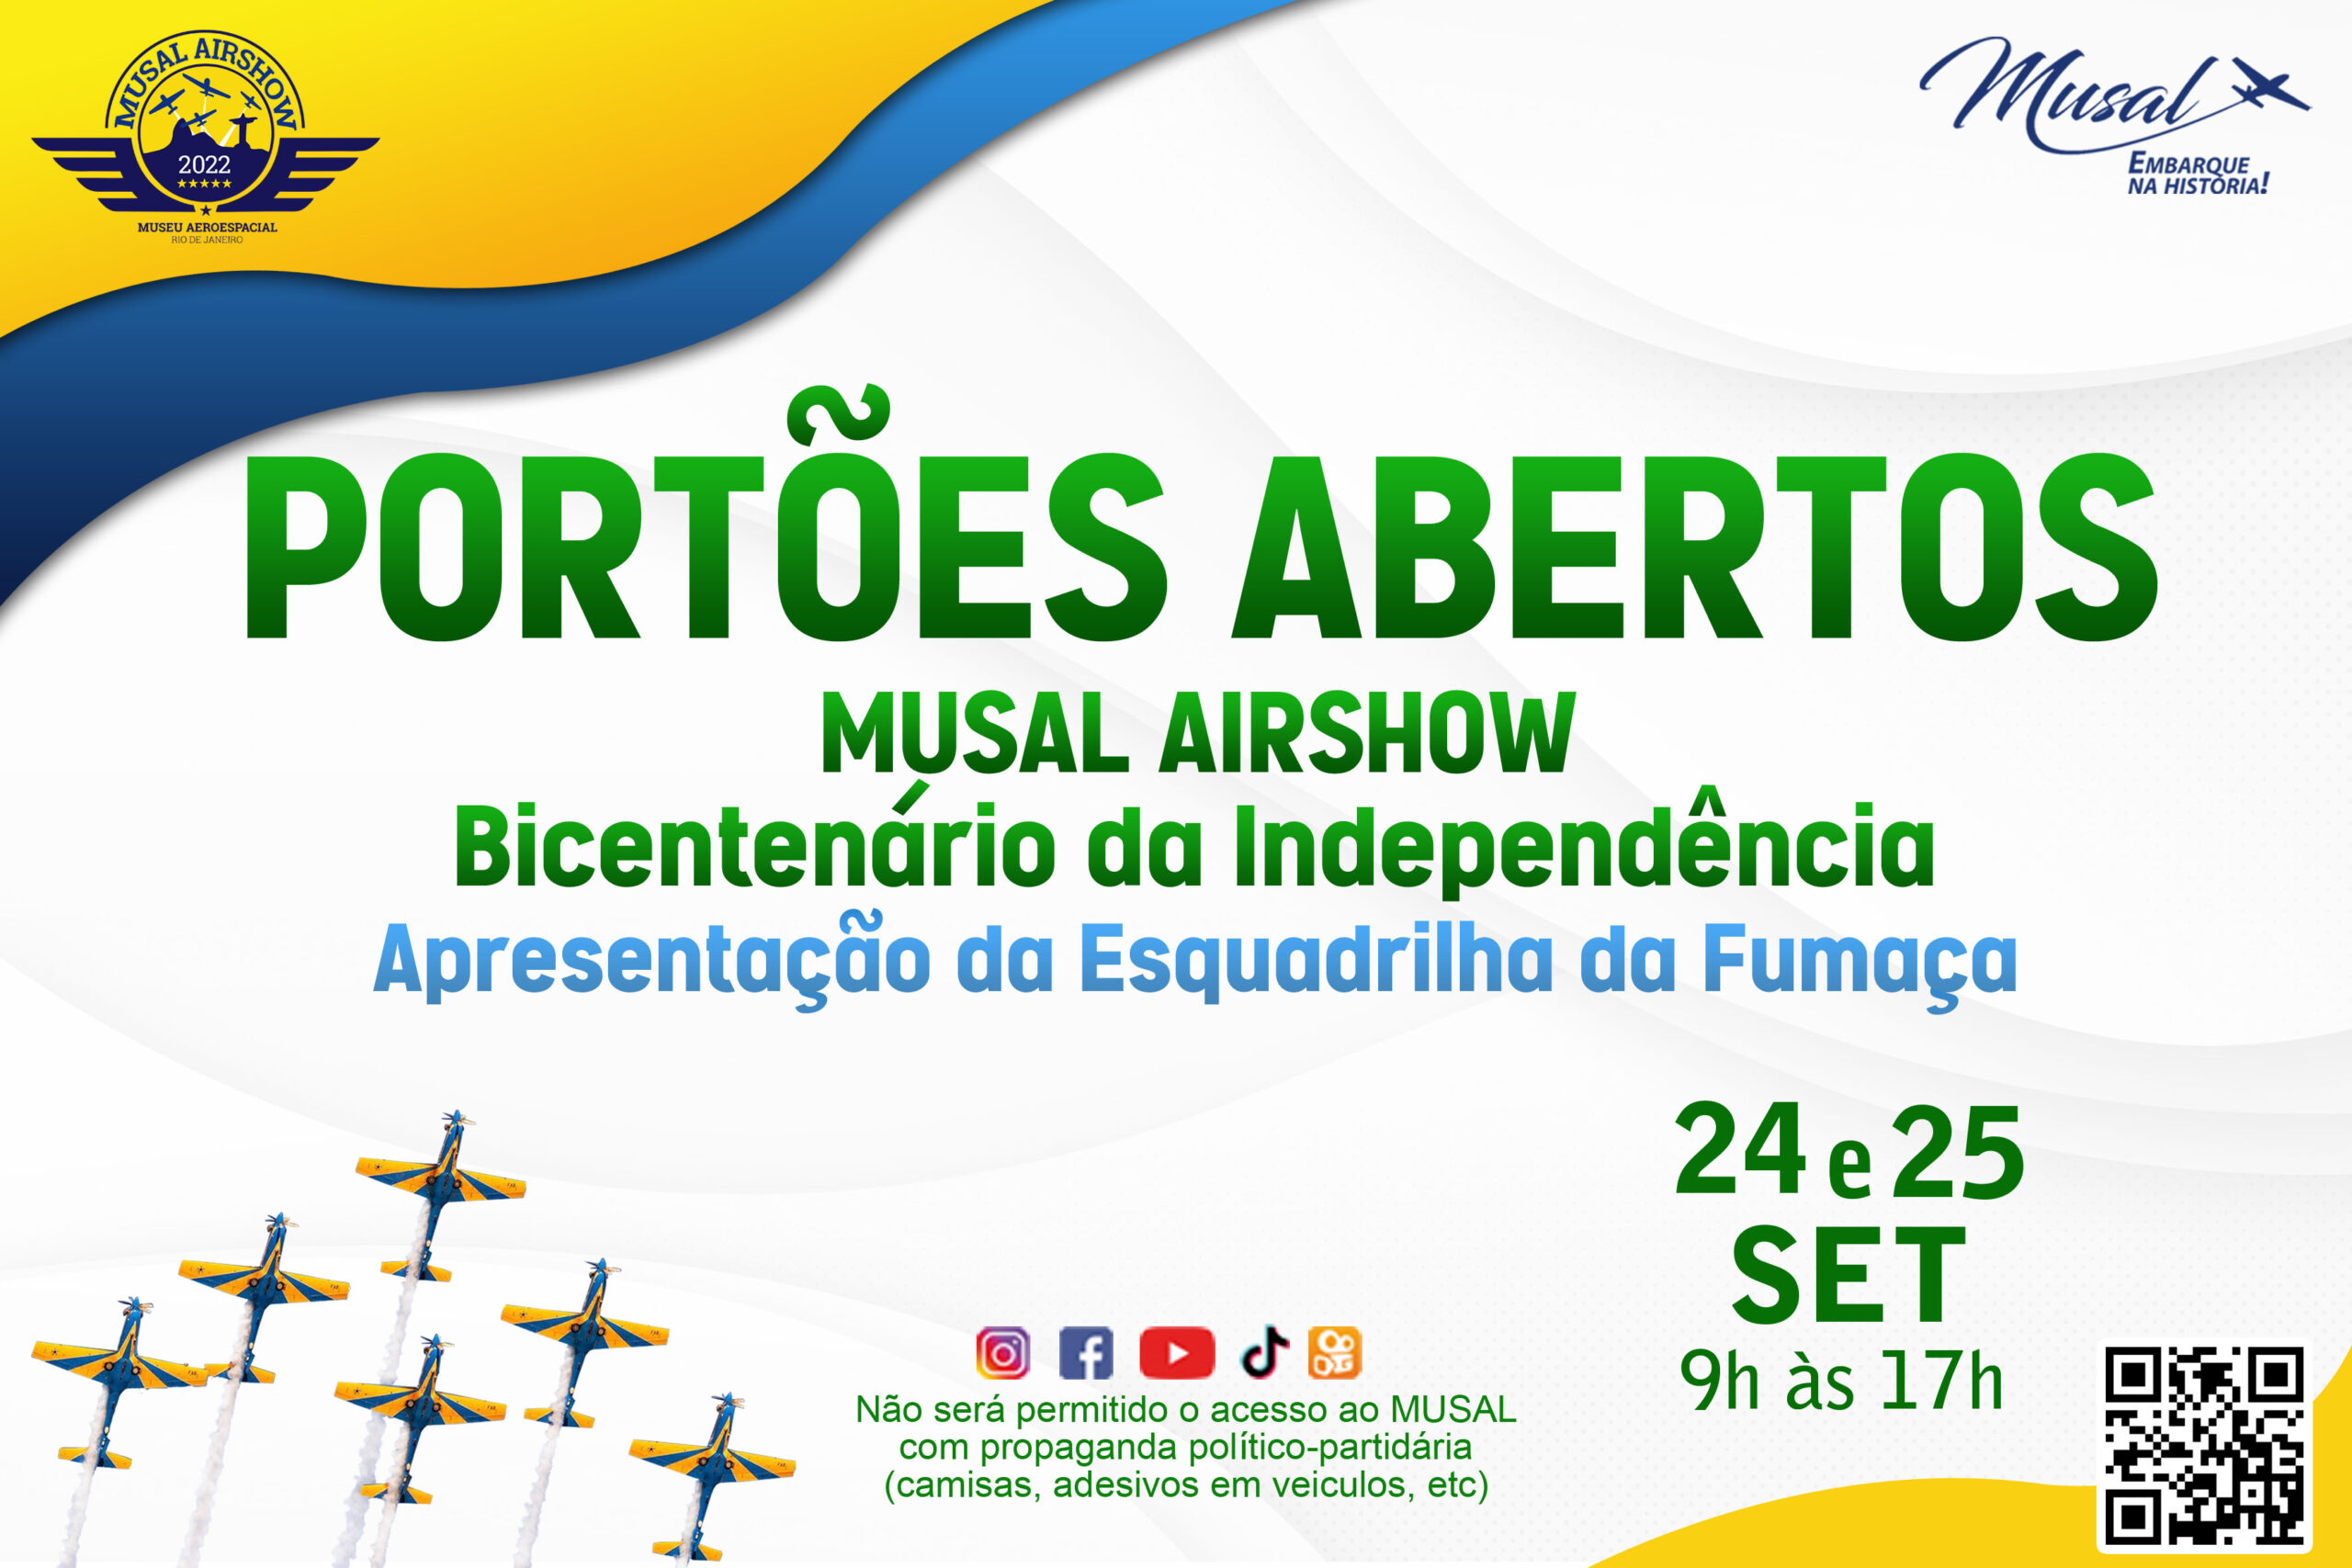 ACRO Brasil - A Associação Brasileira de Acrobacia Aérea foi